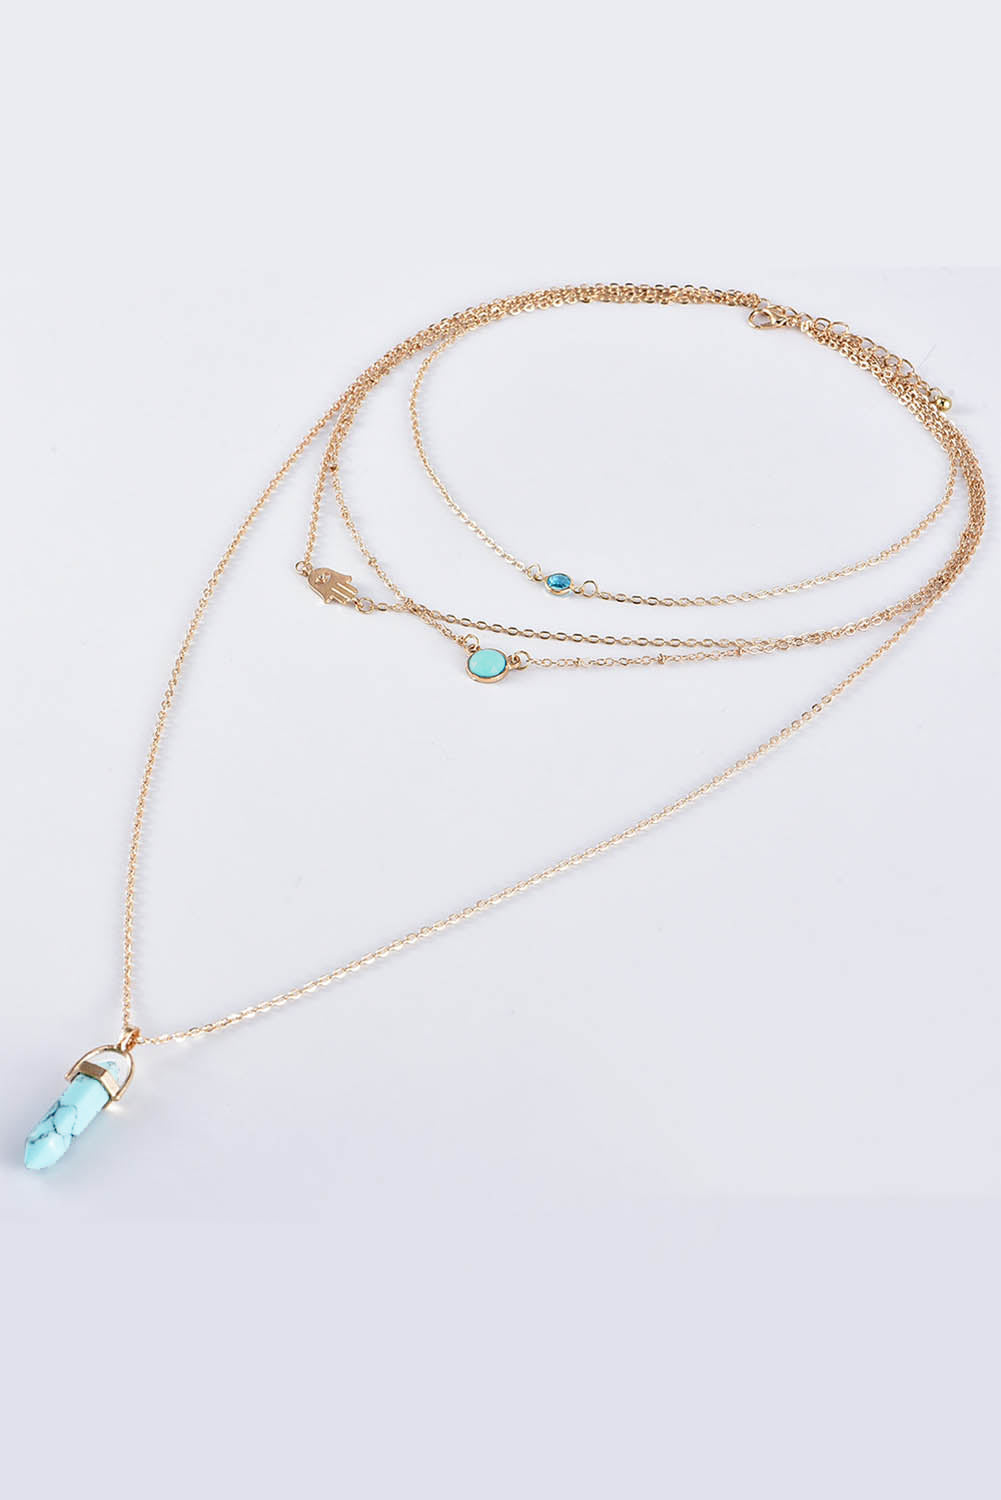 Gold Turquoise Gemstone Pendant Multi-Layered Necklace